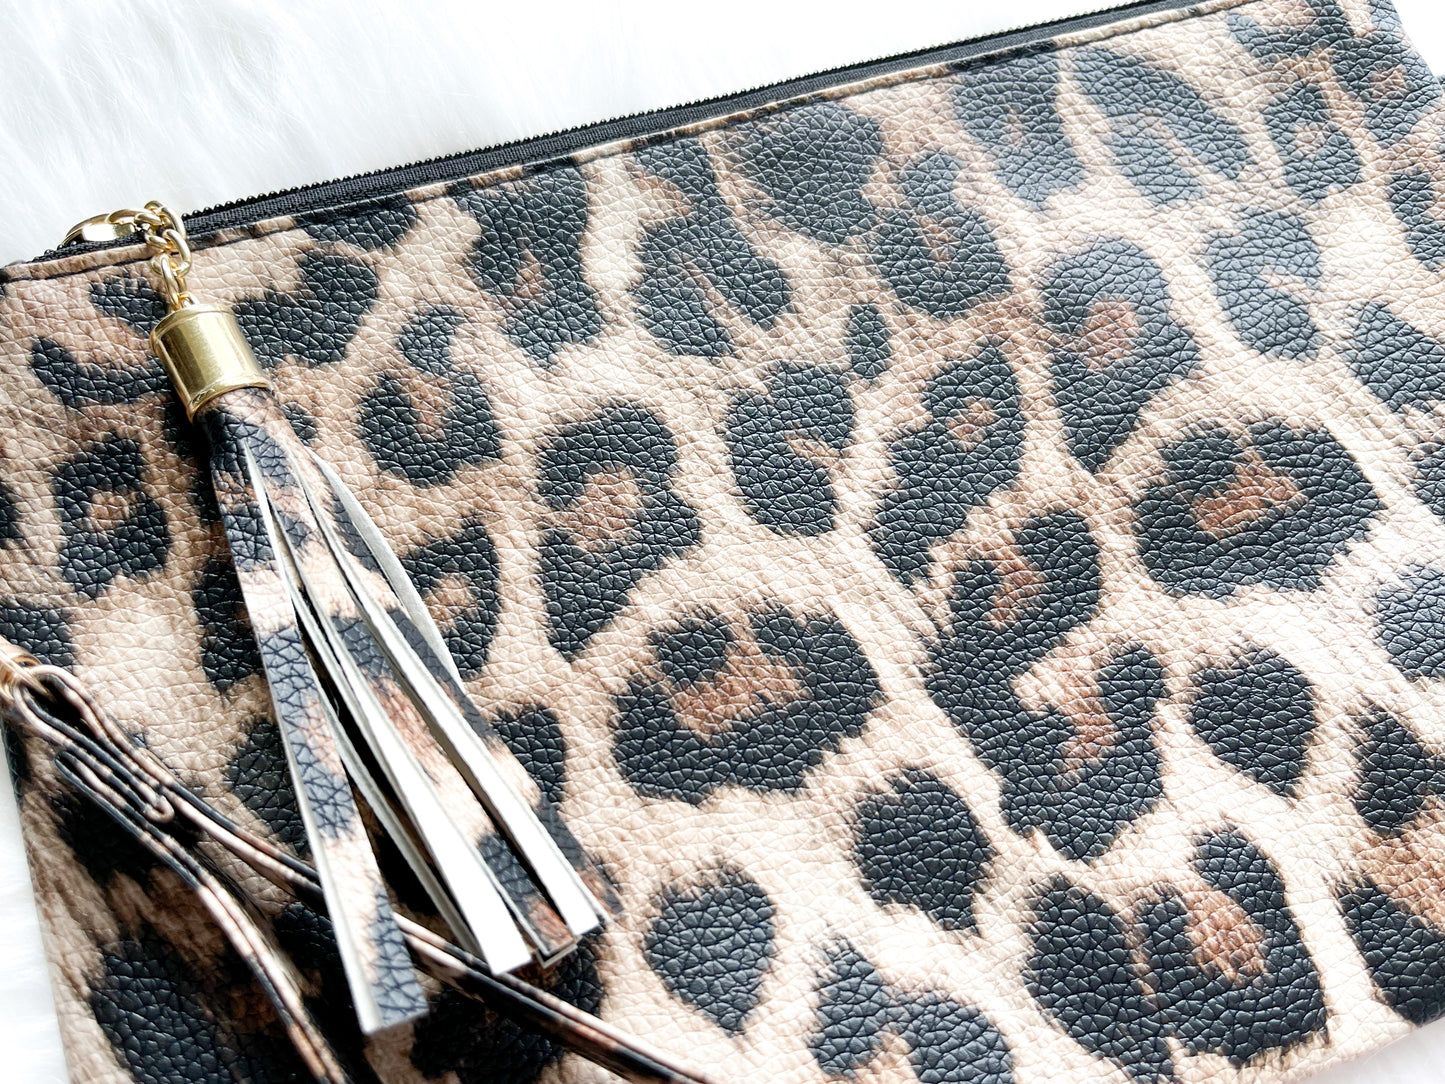 Leopard Handbag